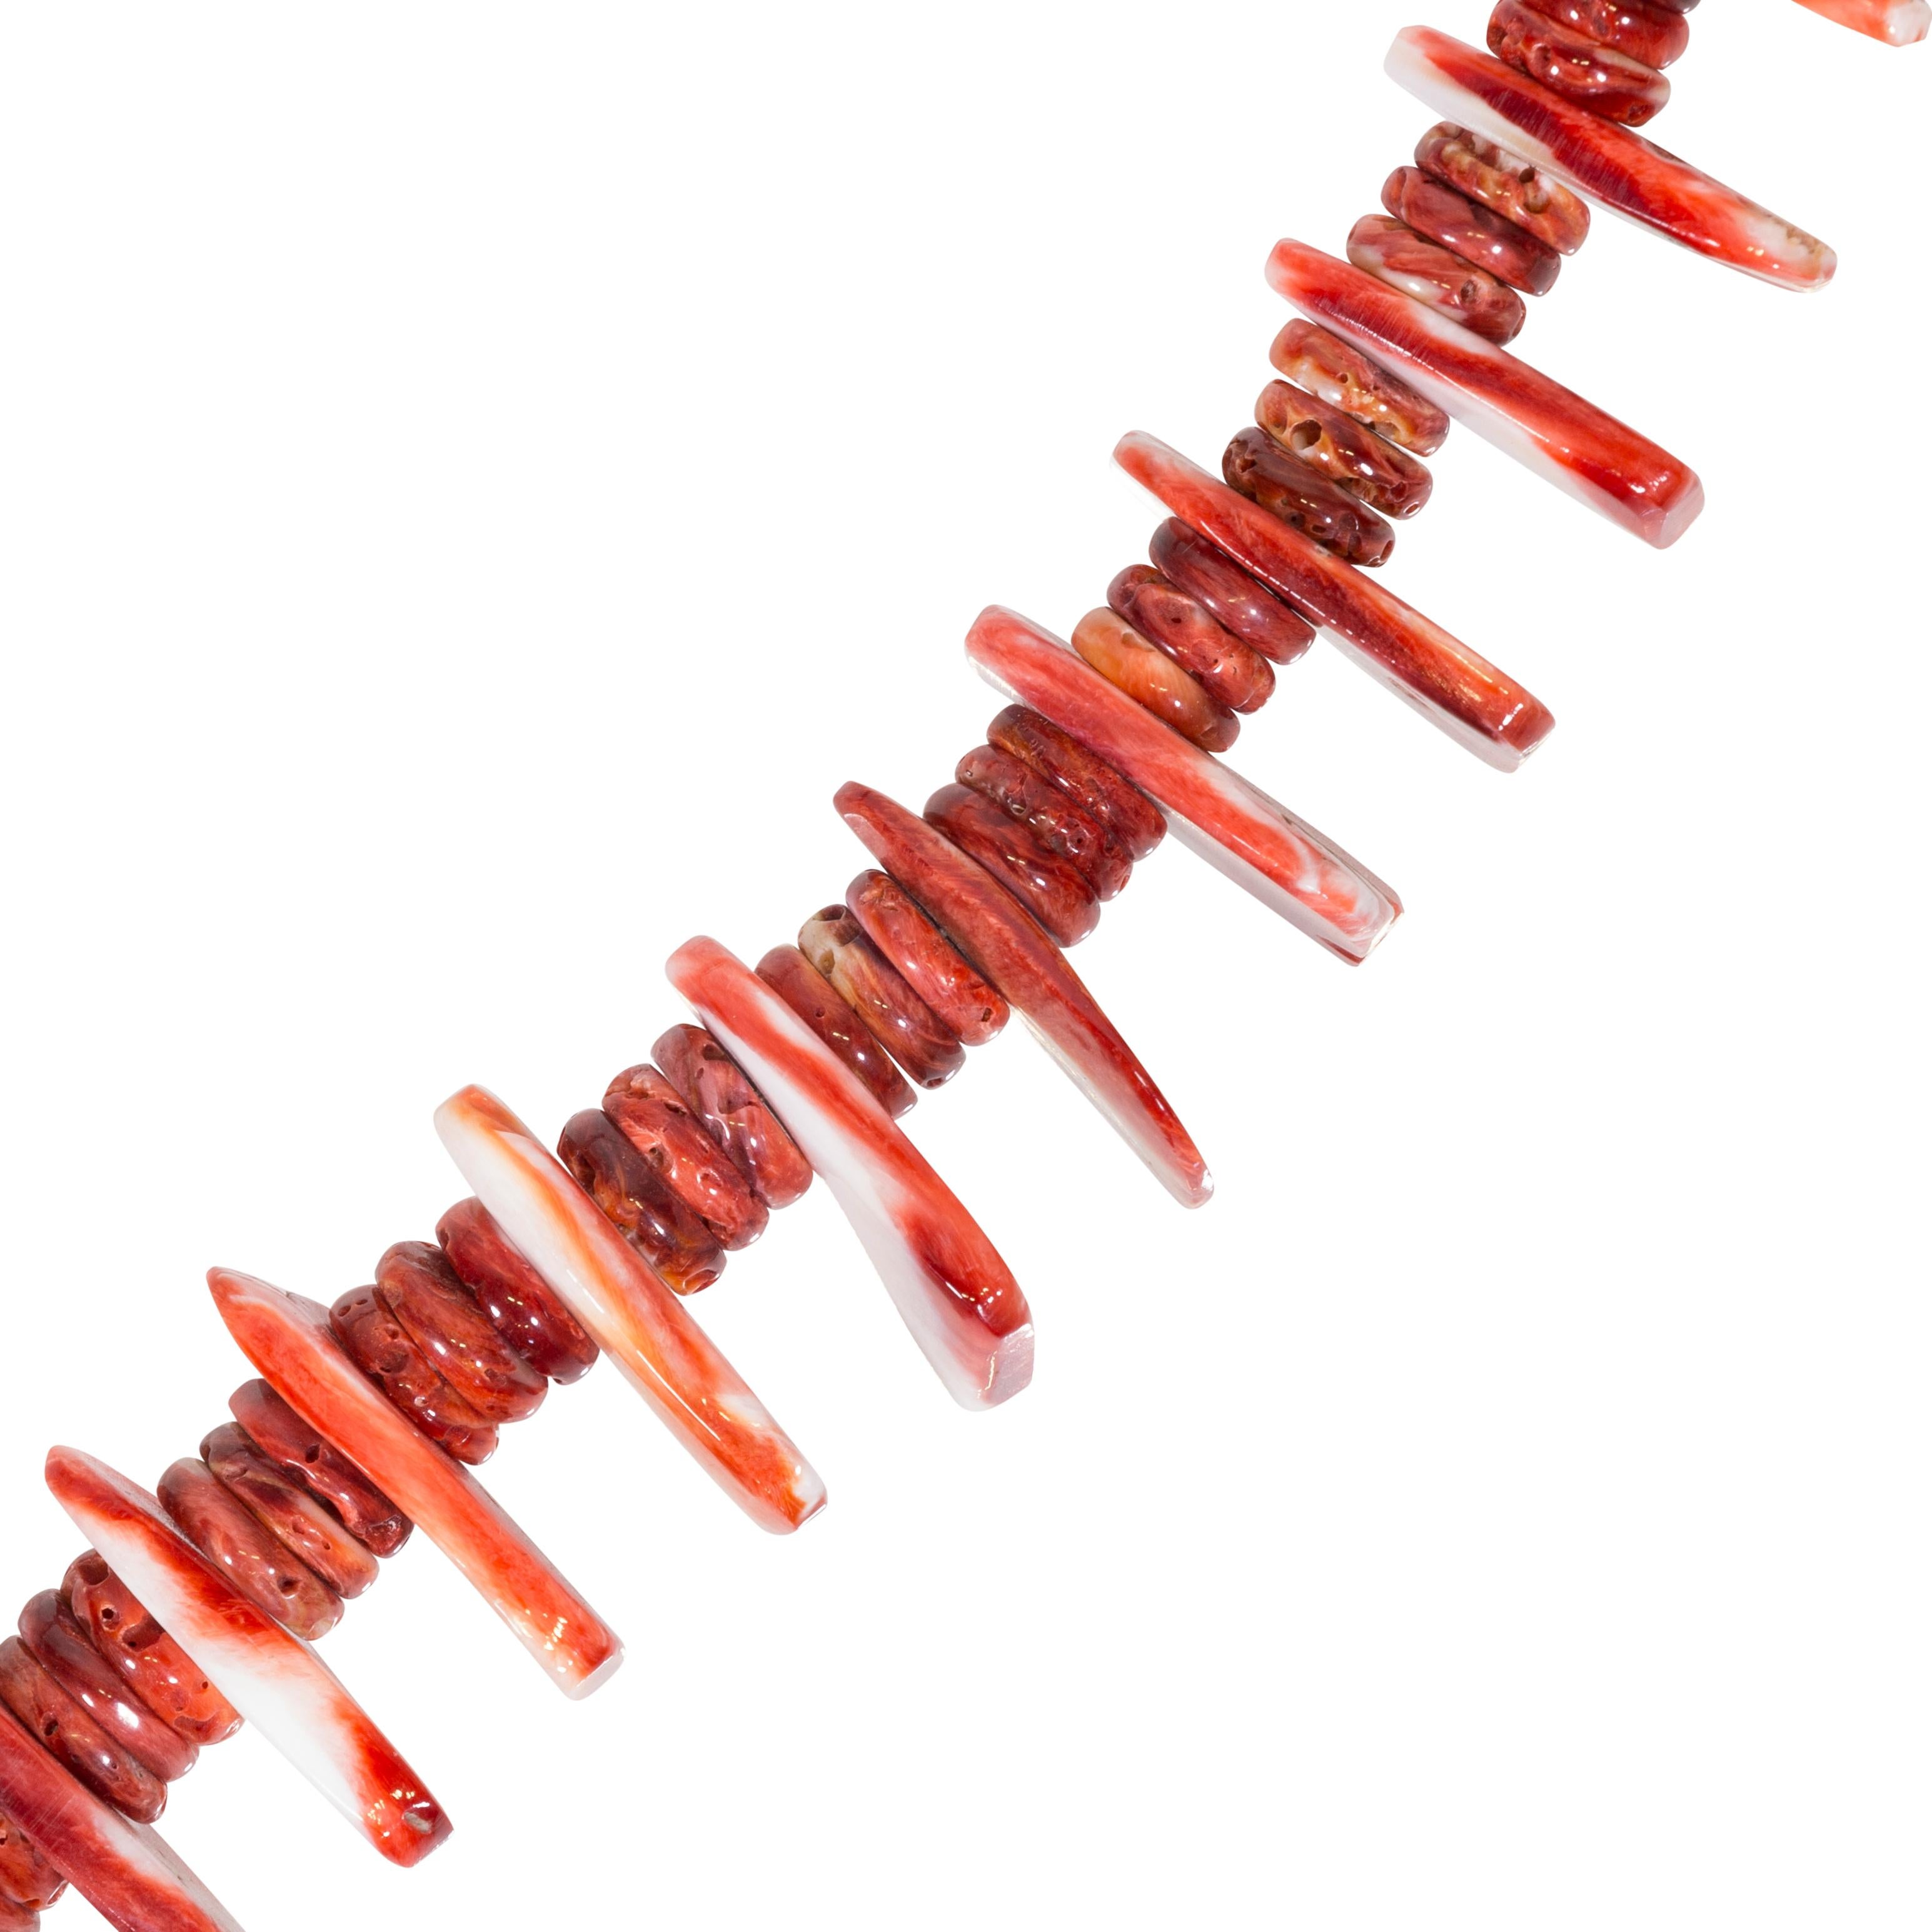 Leuchtende, tief orange-rot-braune, stachelige Austernschalen mit flachen Rondellen und größeren, unterschiedlich geformten Scheiben. Hervorragende Handwerkskunst und feine Politur. Passende Ohrringe mit Bügel.

ZEITRAUM: Nach 1950
URSPRUNG: Navajo,